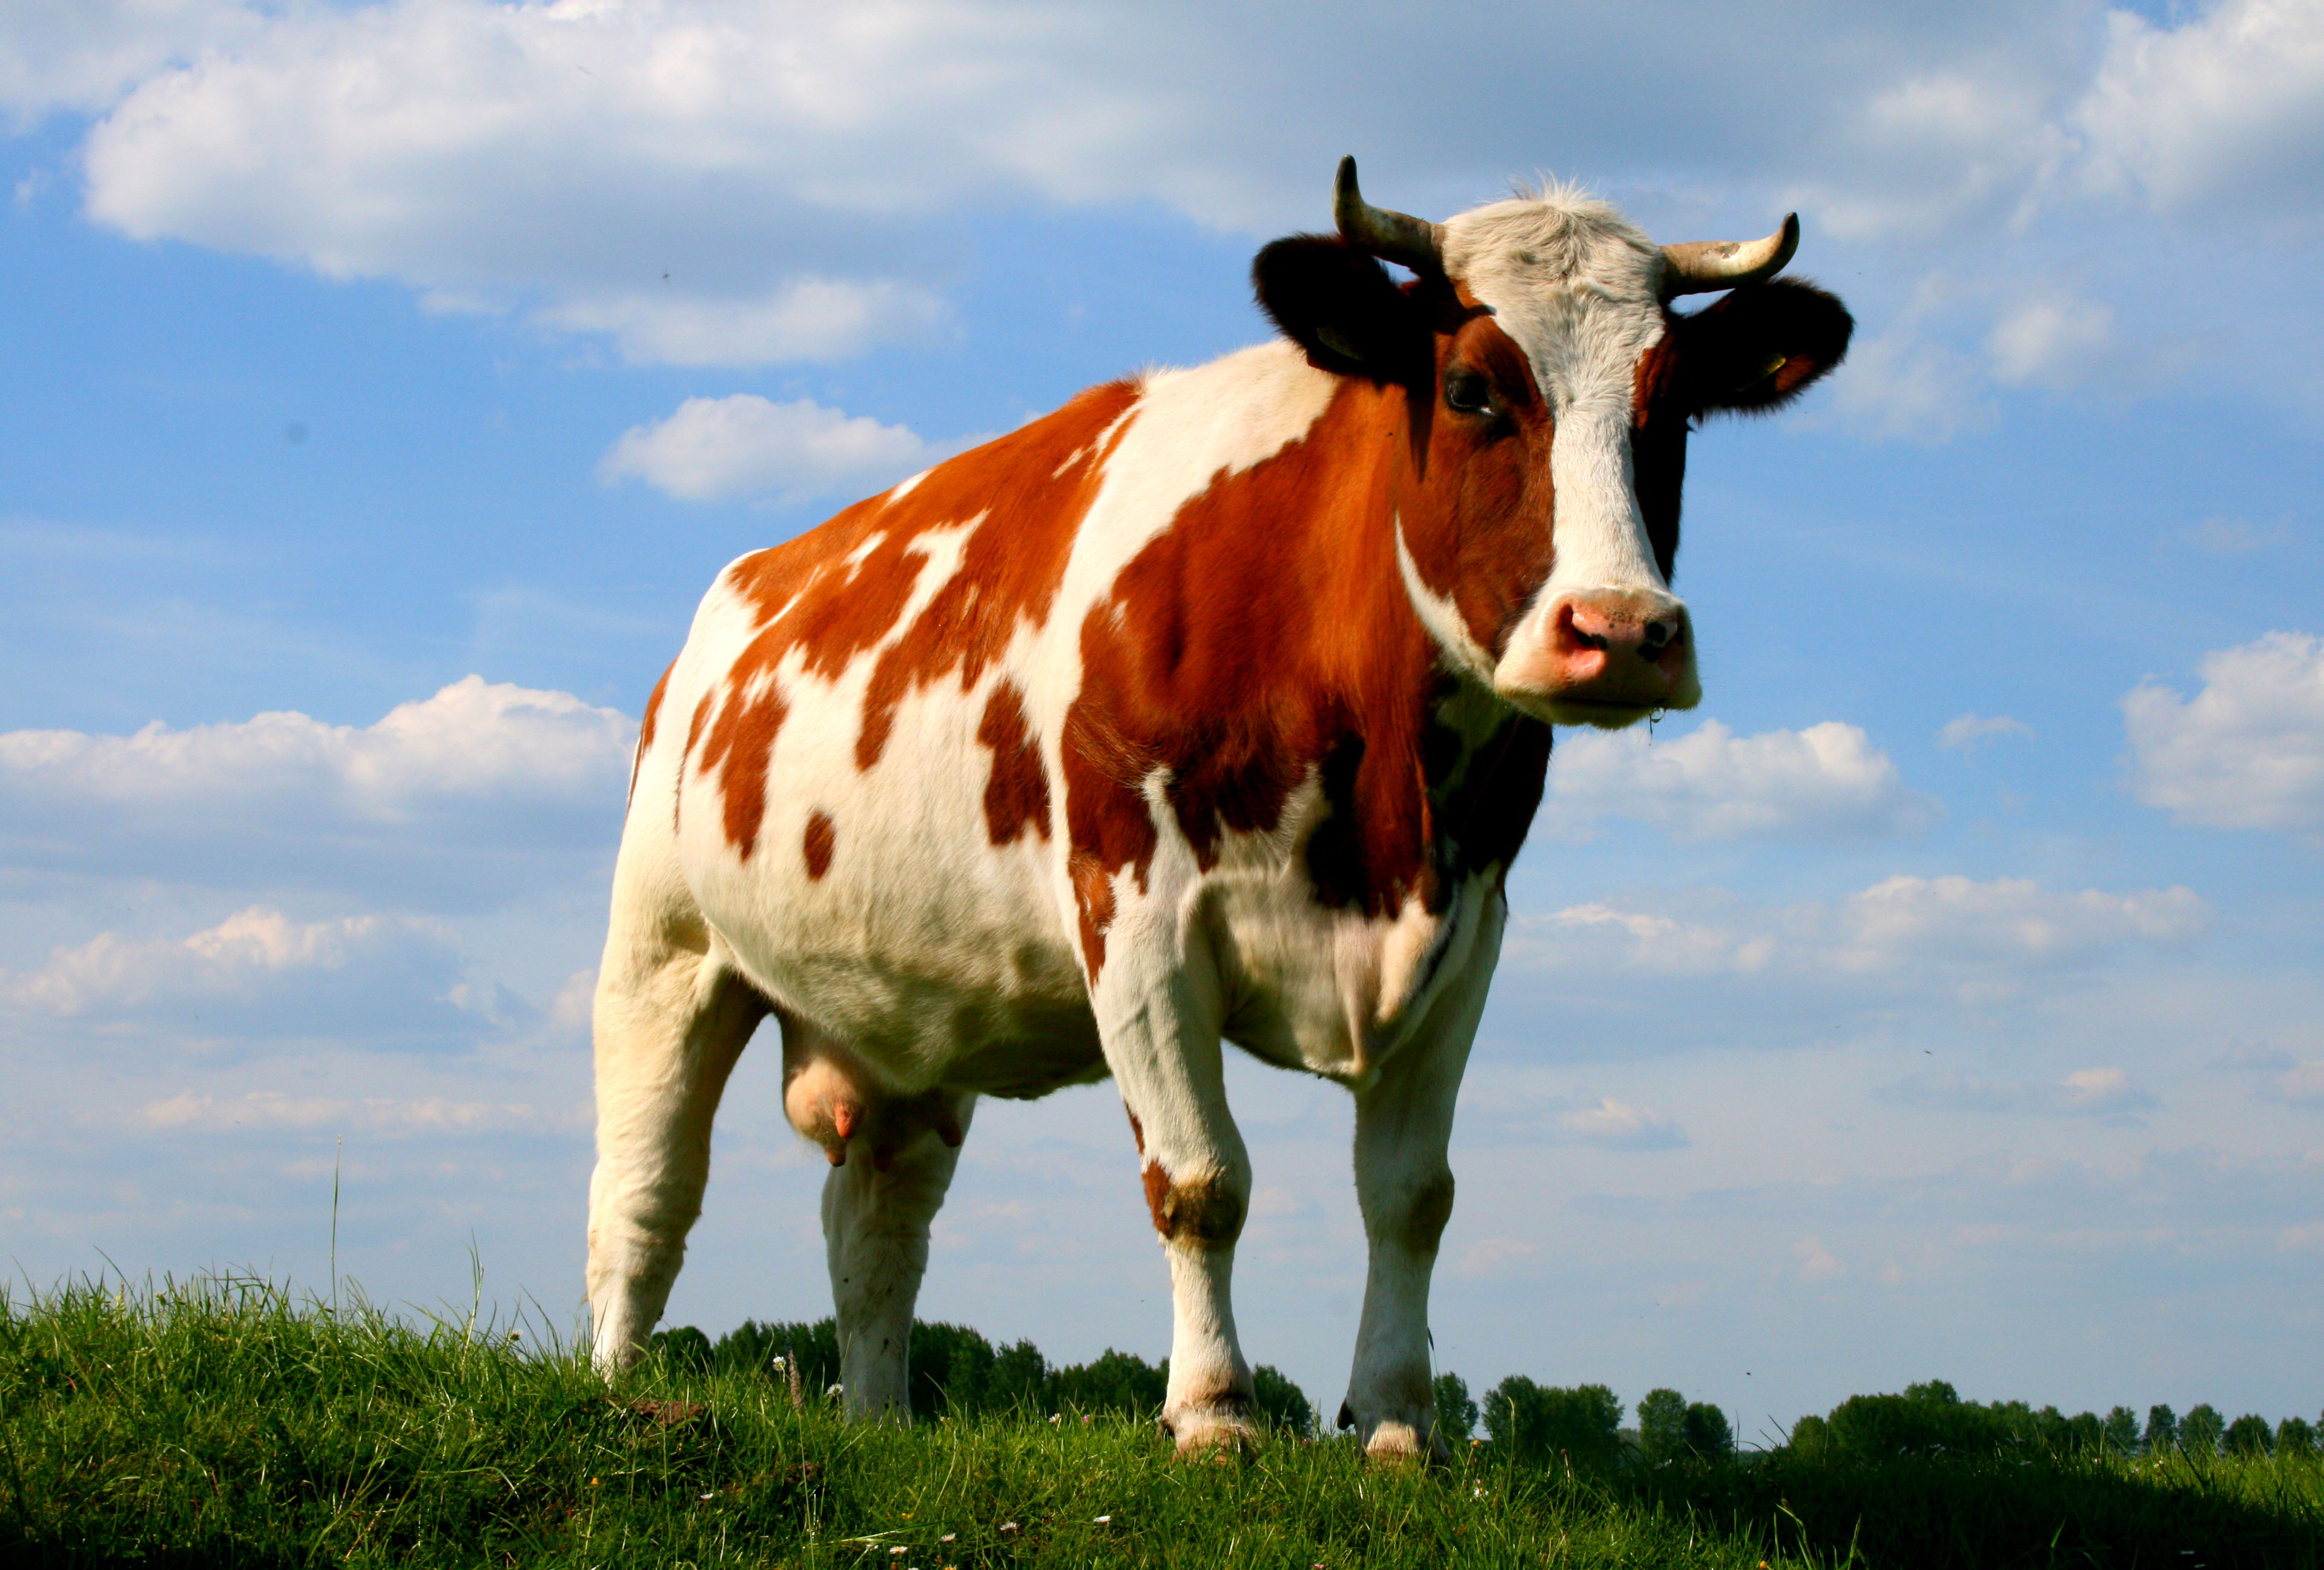 Wallpaper Cows Ongrass Photo